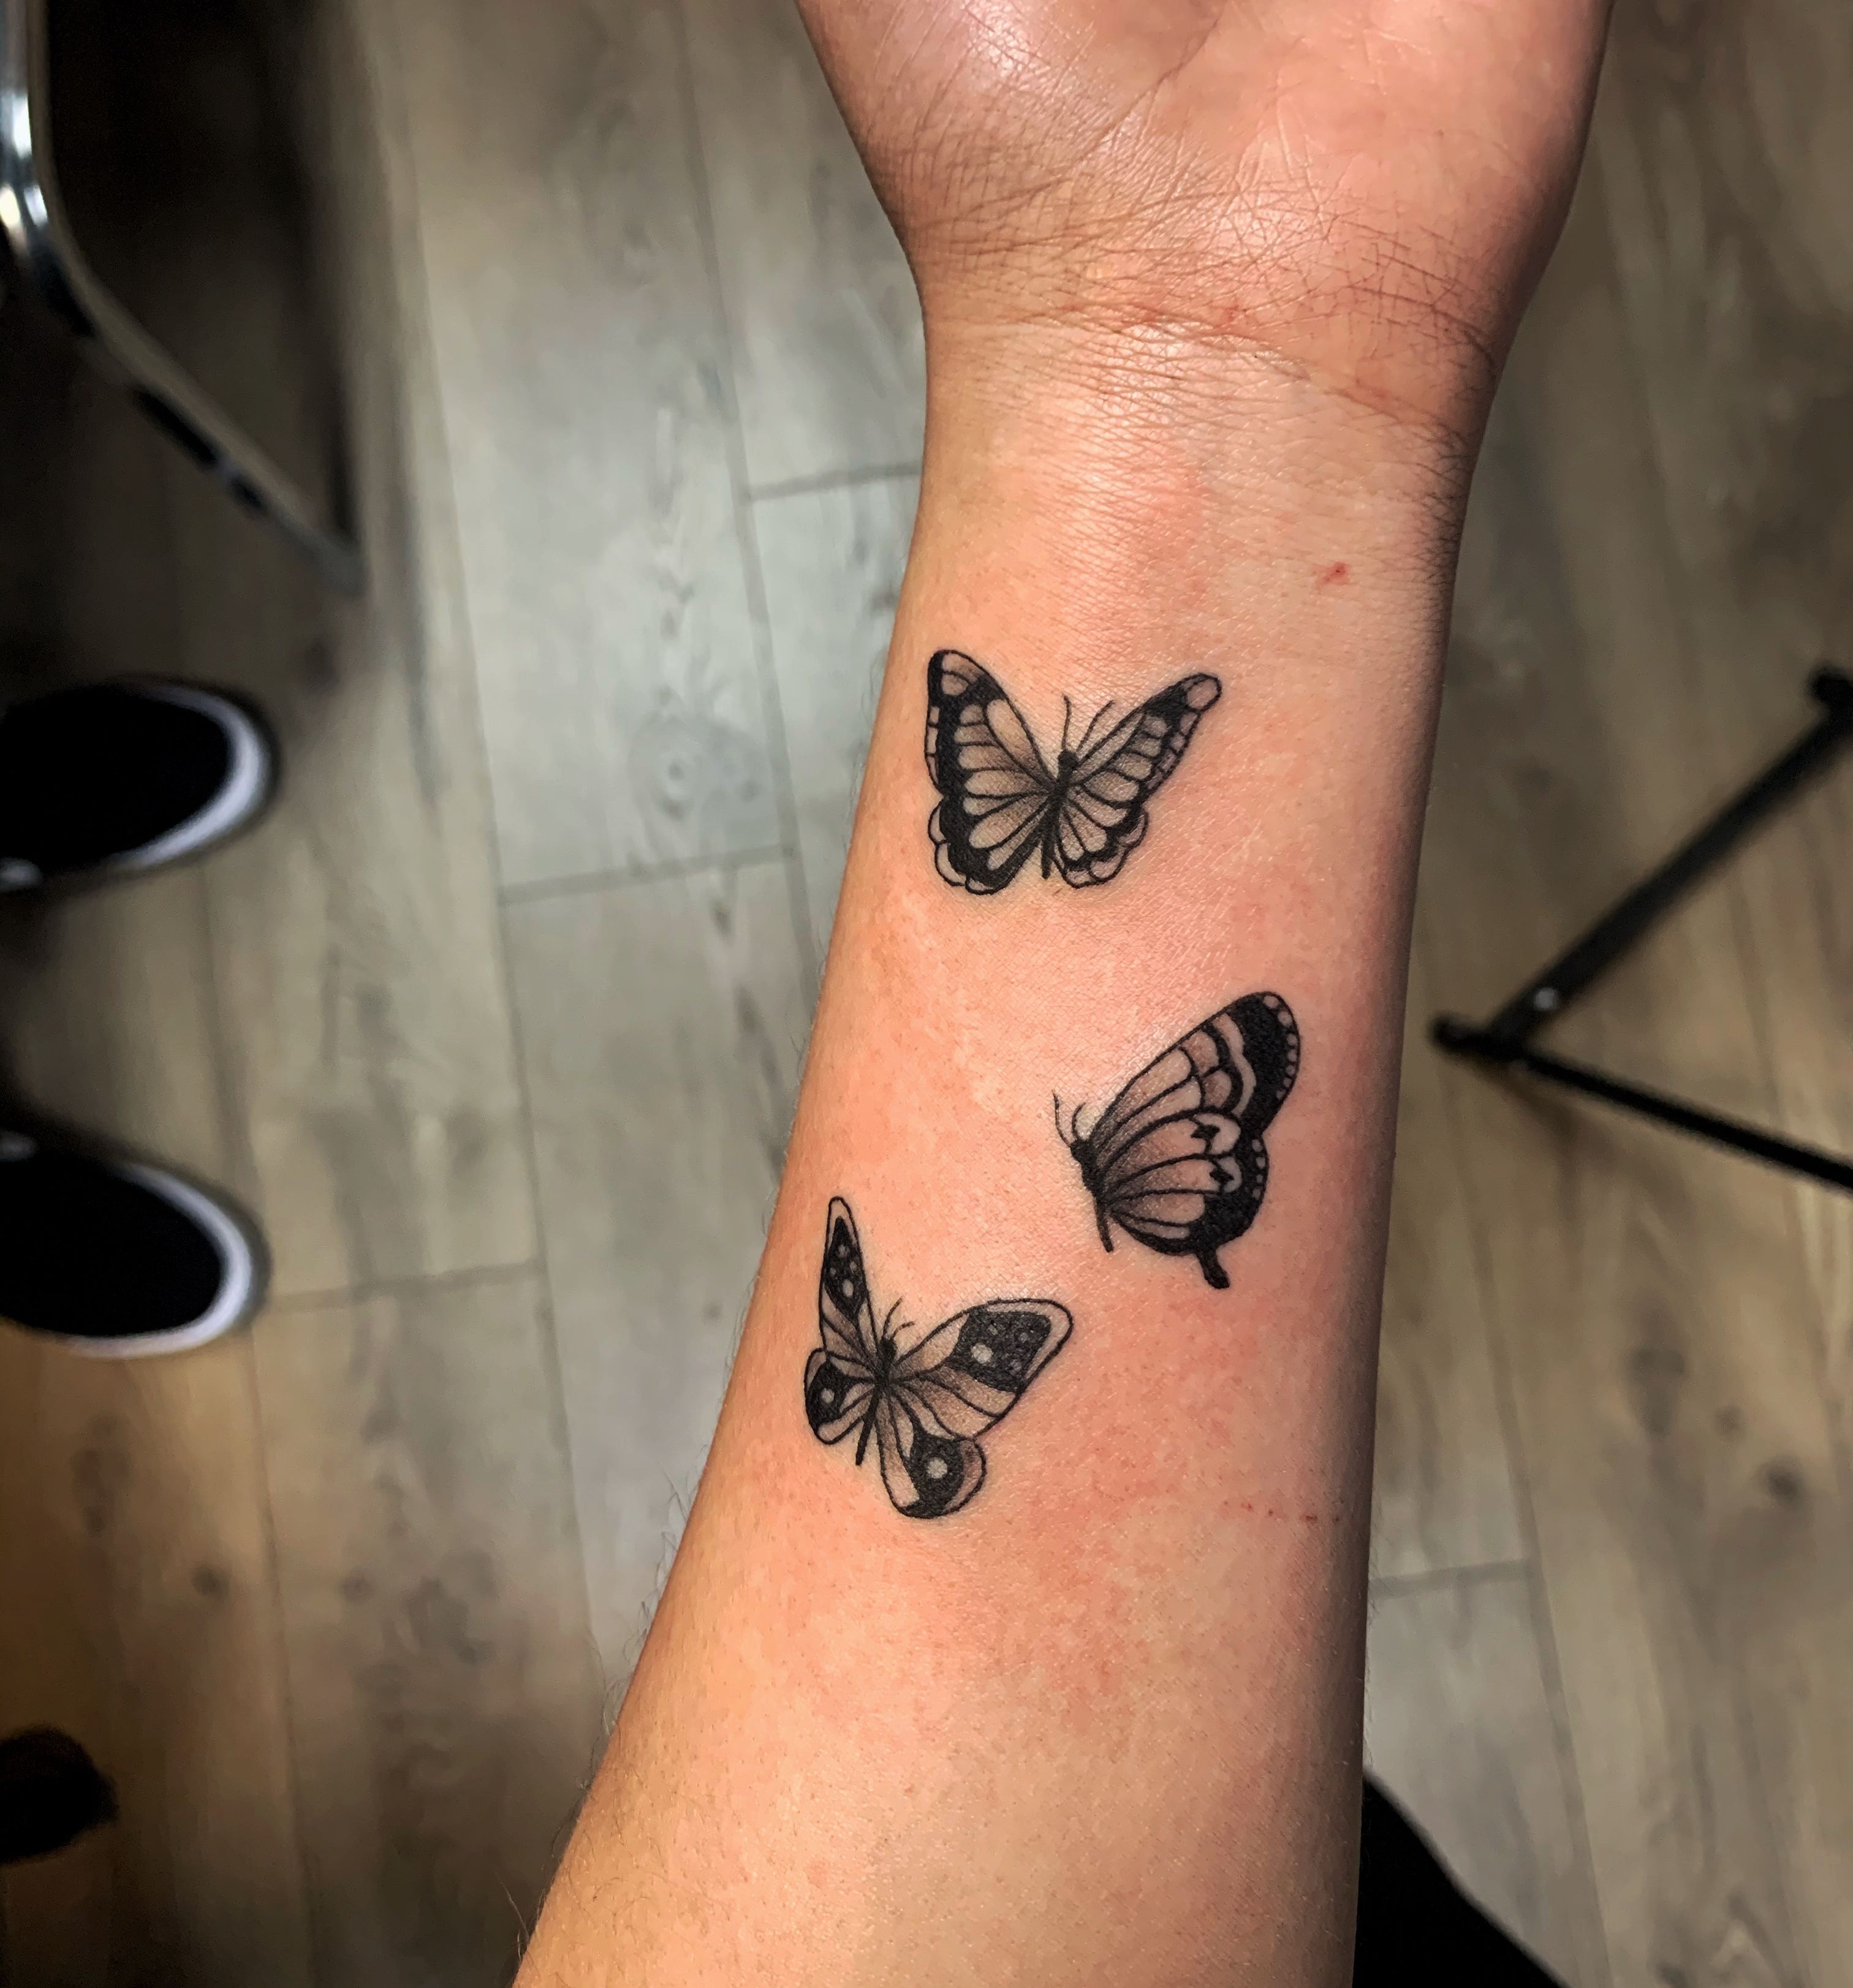 Swallowtail Butterfly by Mack Kelly at Asylum Studios in Roanoke VA  r tattoos